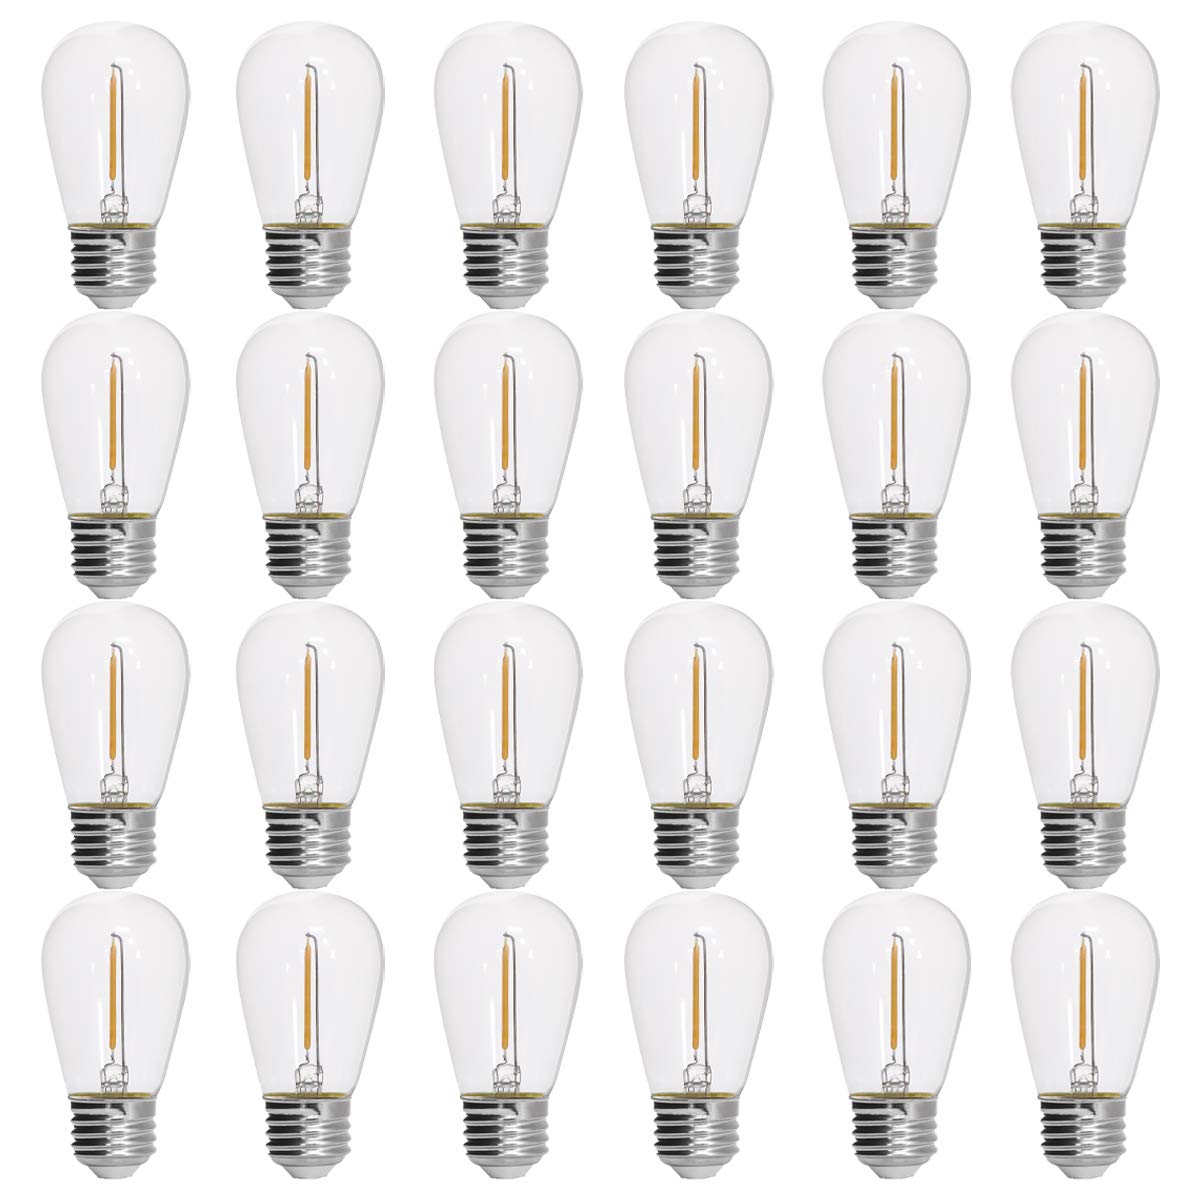 DYSMIO S14 Light Bulbs  - Very Good